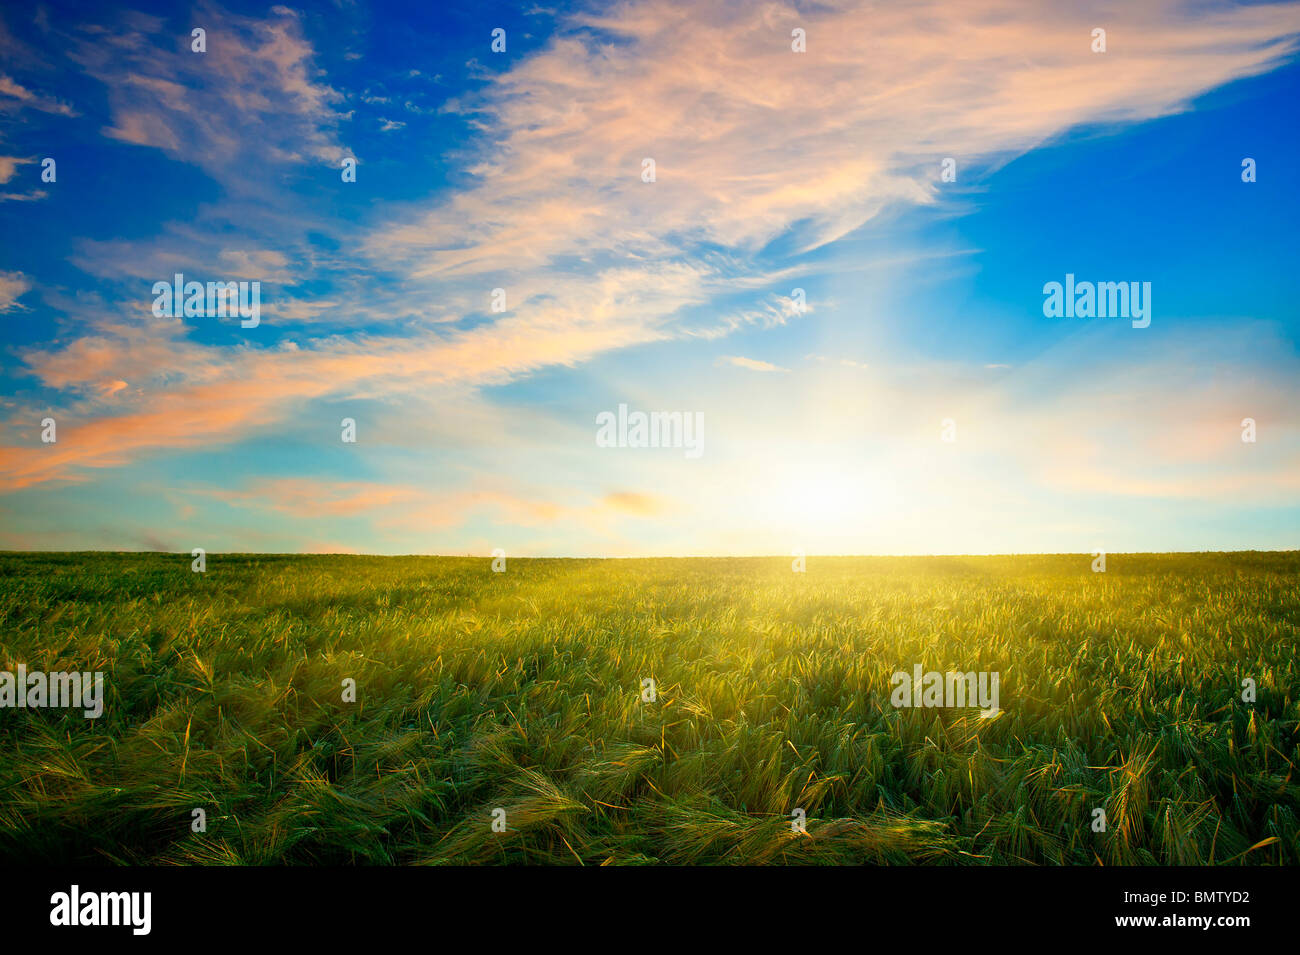 Coucher de soleil sur champ de blé Banque D'Images